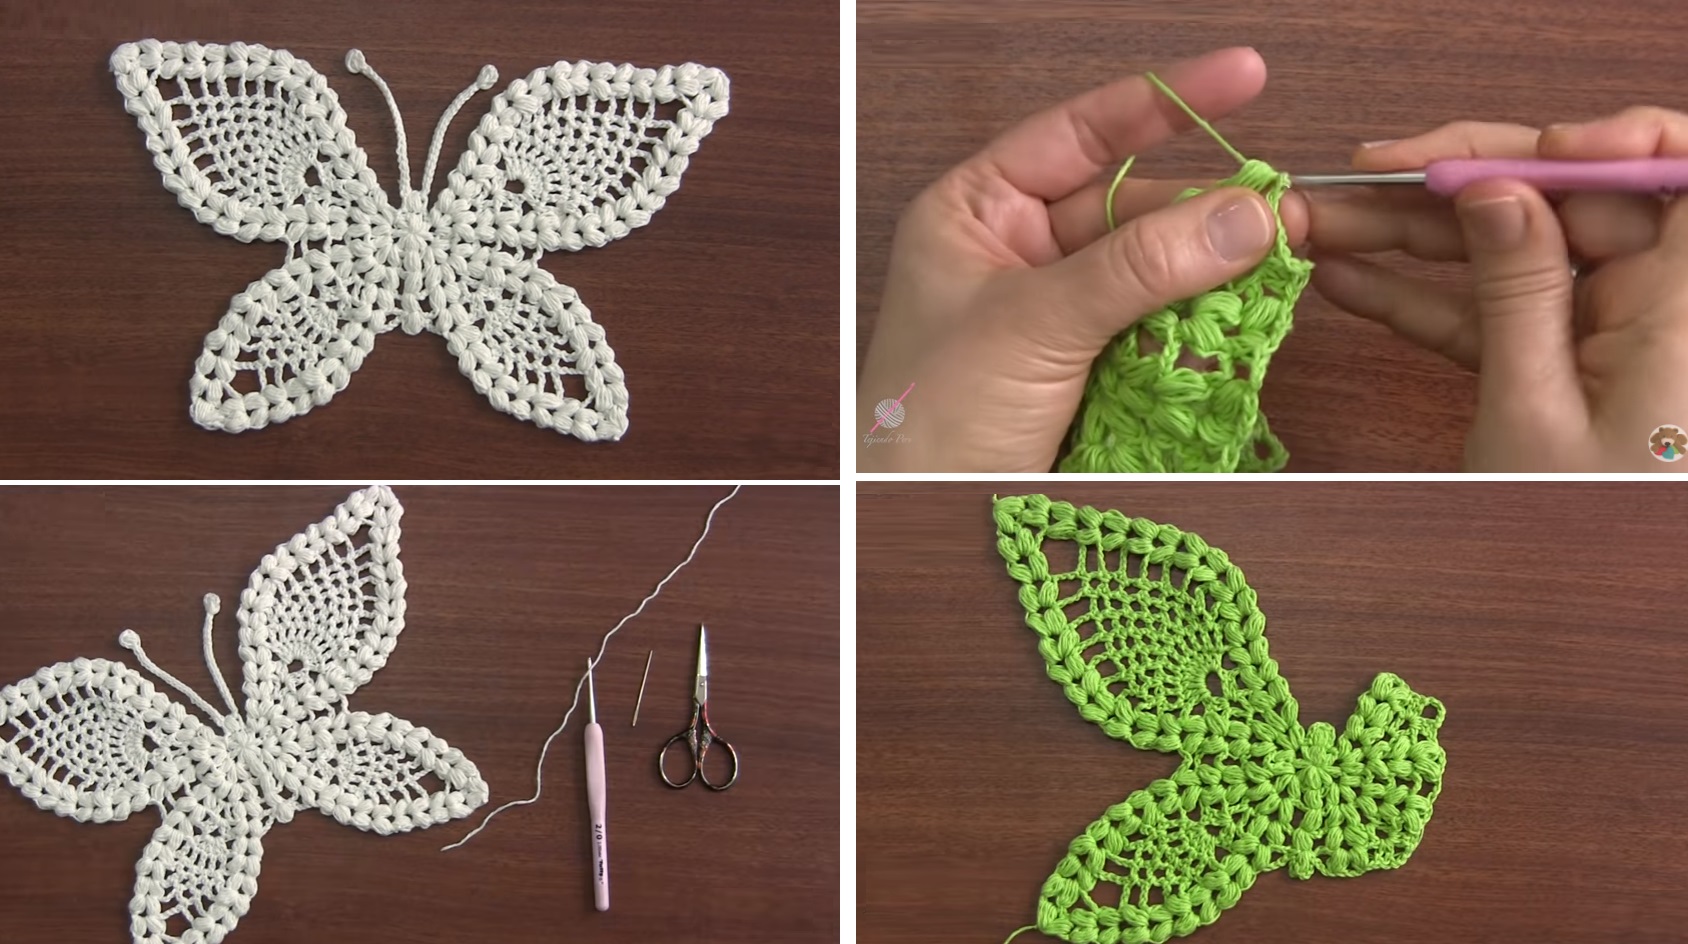 Butterfly Crochet Tutorial More Butterflies To Crochet Tutorials More